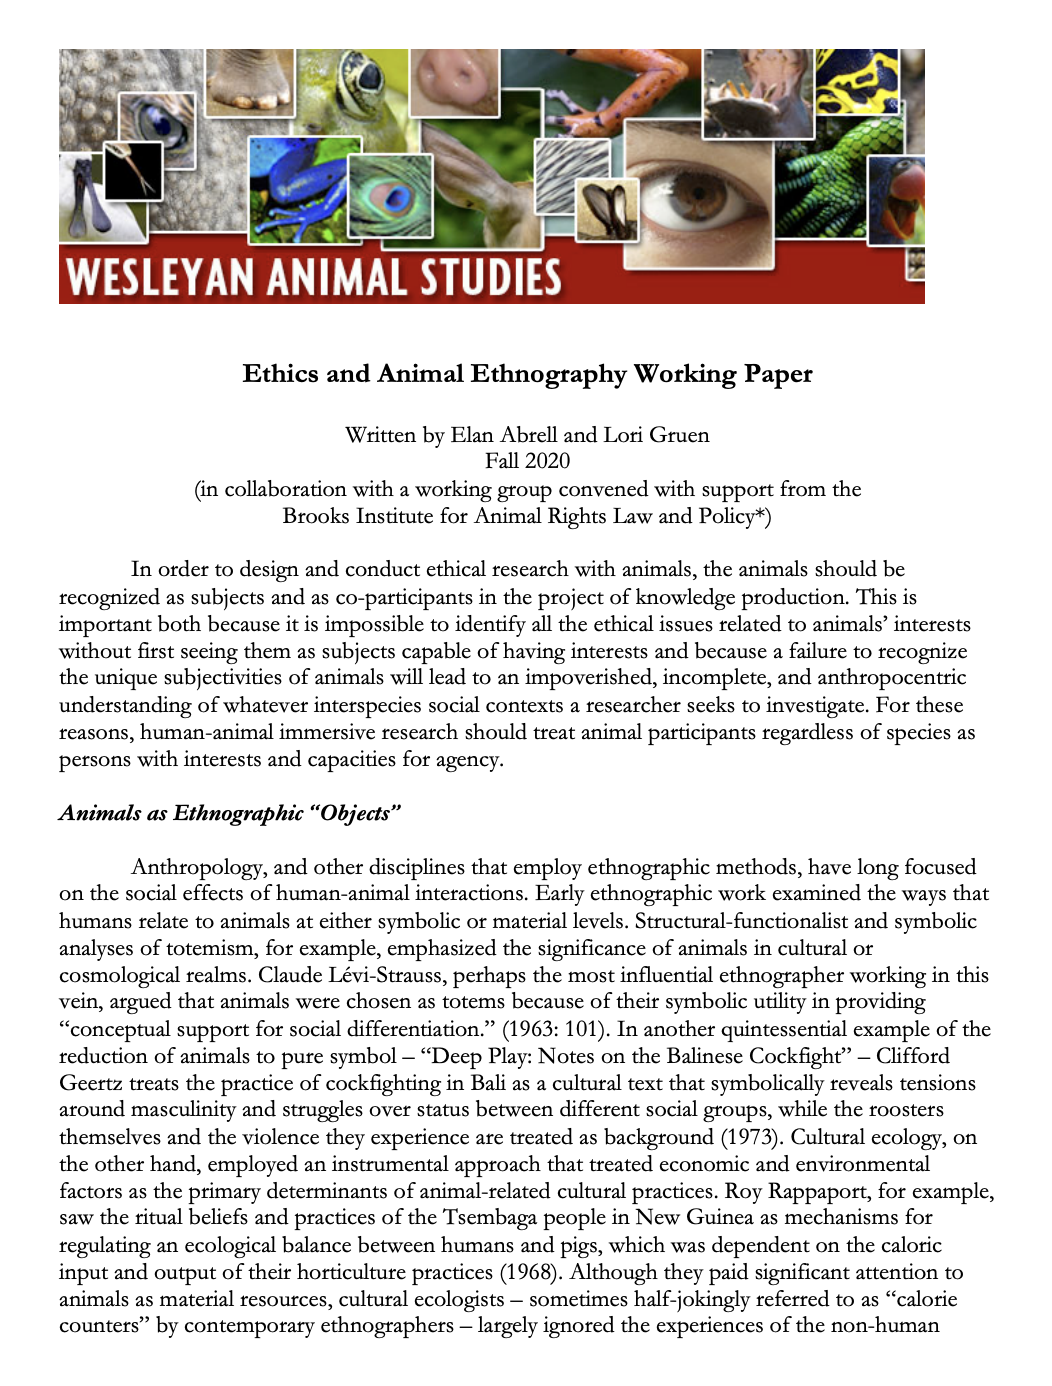 Ethics and Animal Ethnography, Animal Studies - Wesleyan University